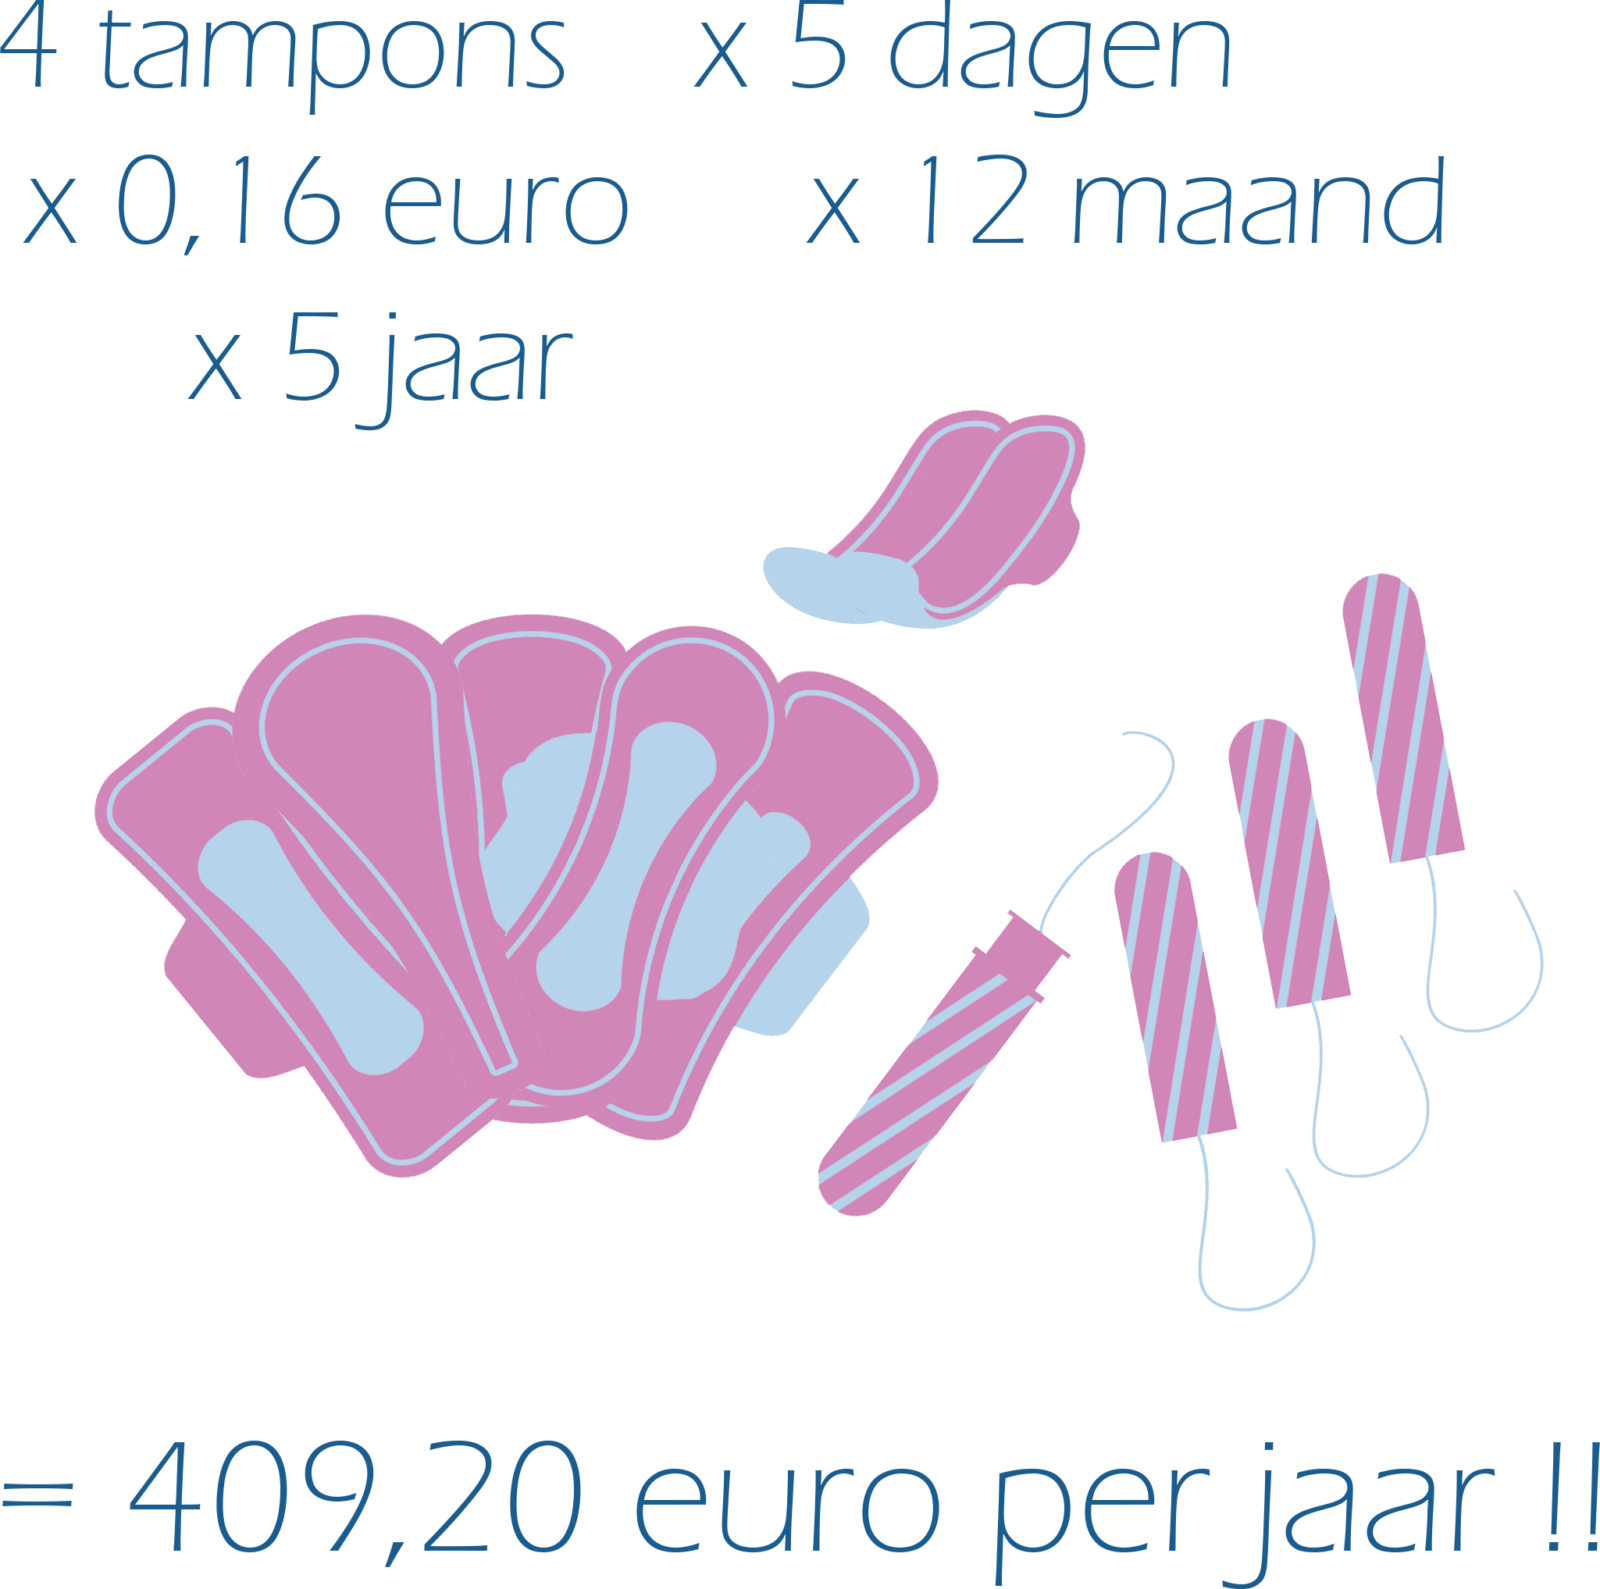 vergelijking prijs tampons en menstruatiecup